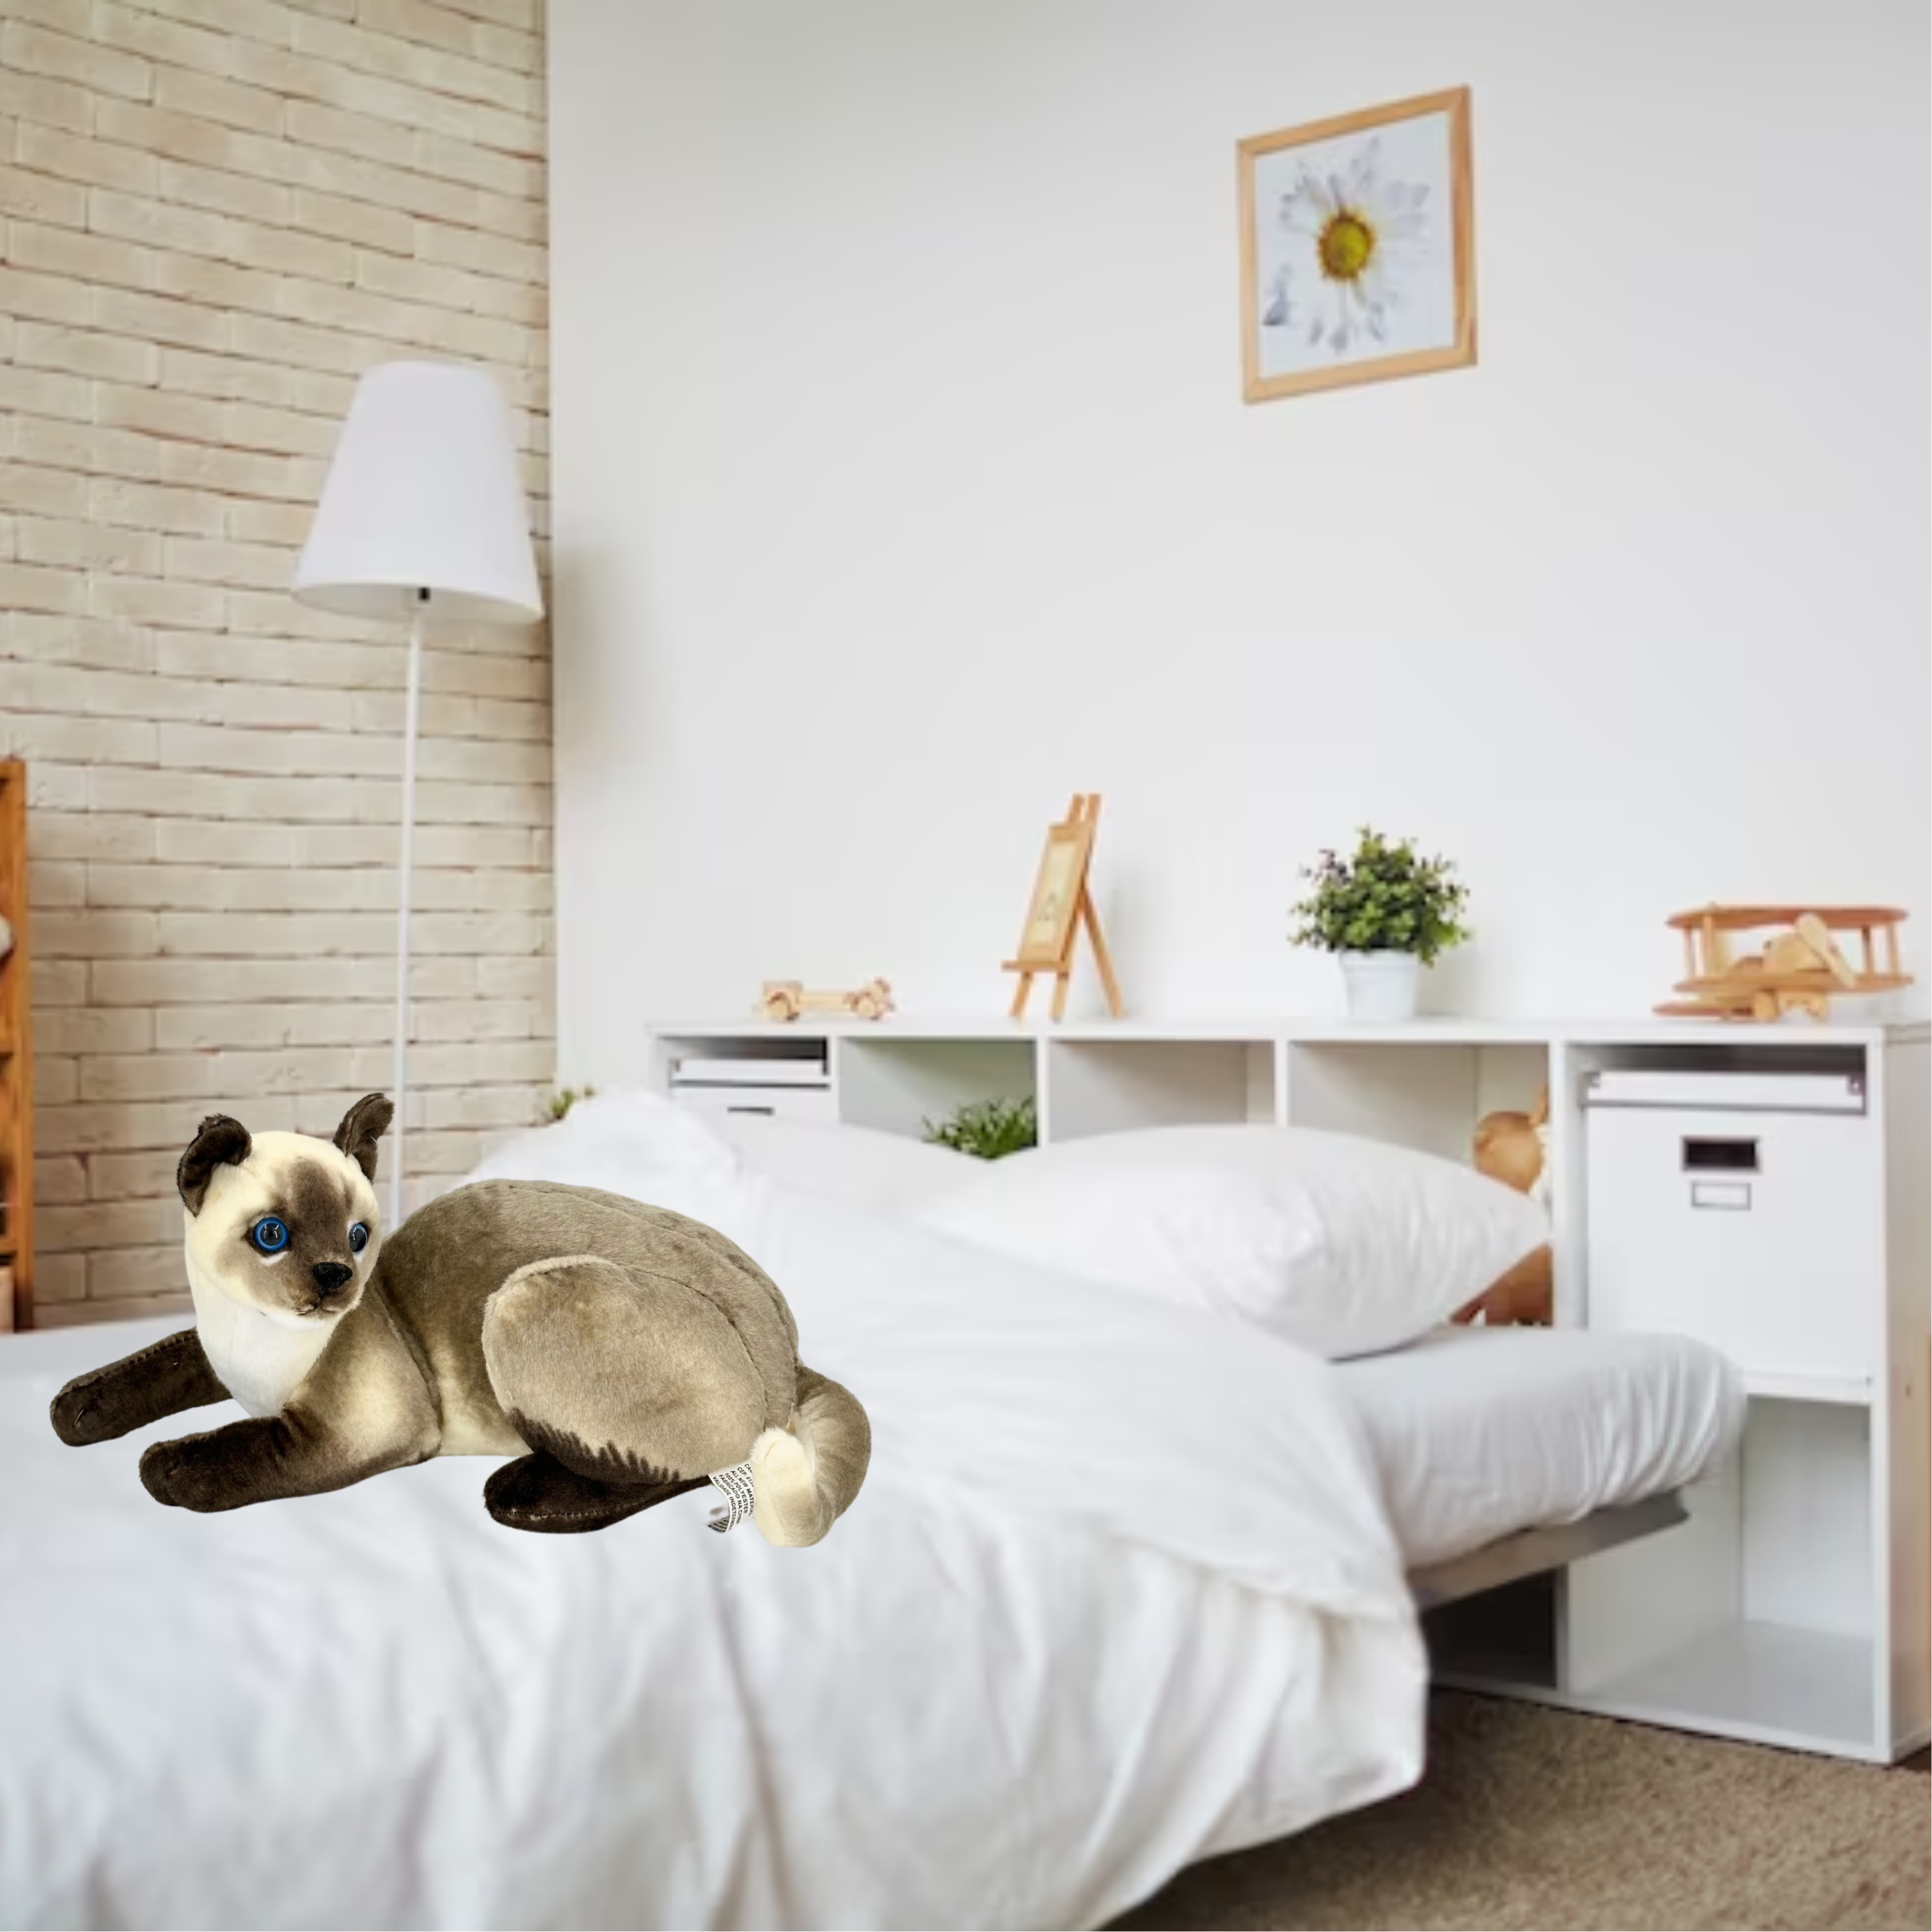 Gato Realista Siamês - 35cm – Bicho.com